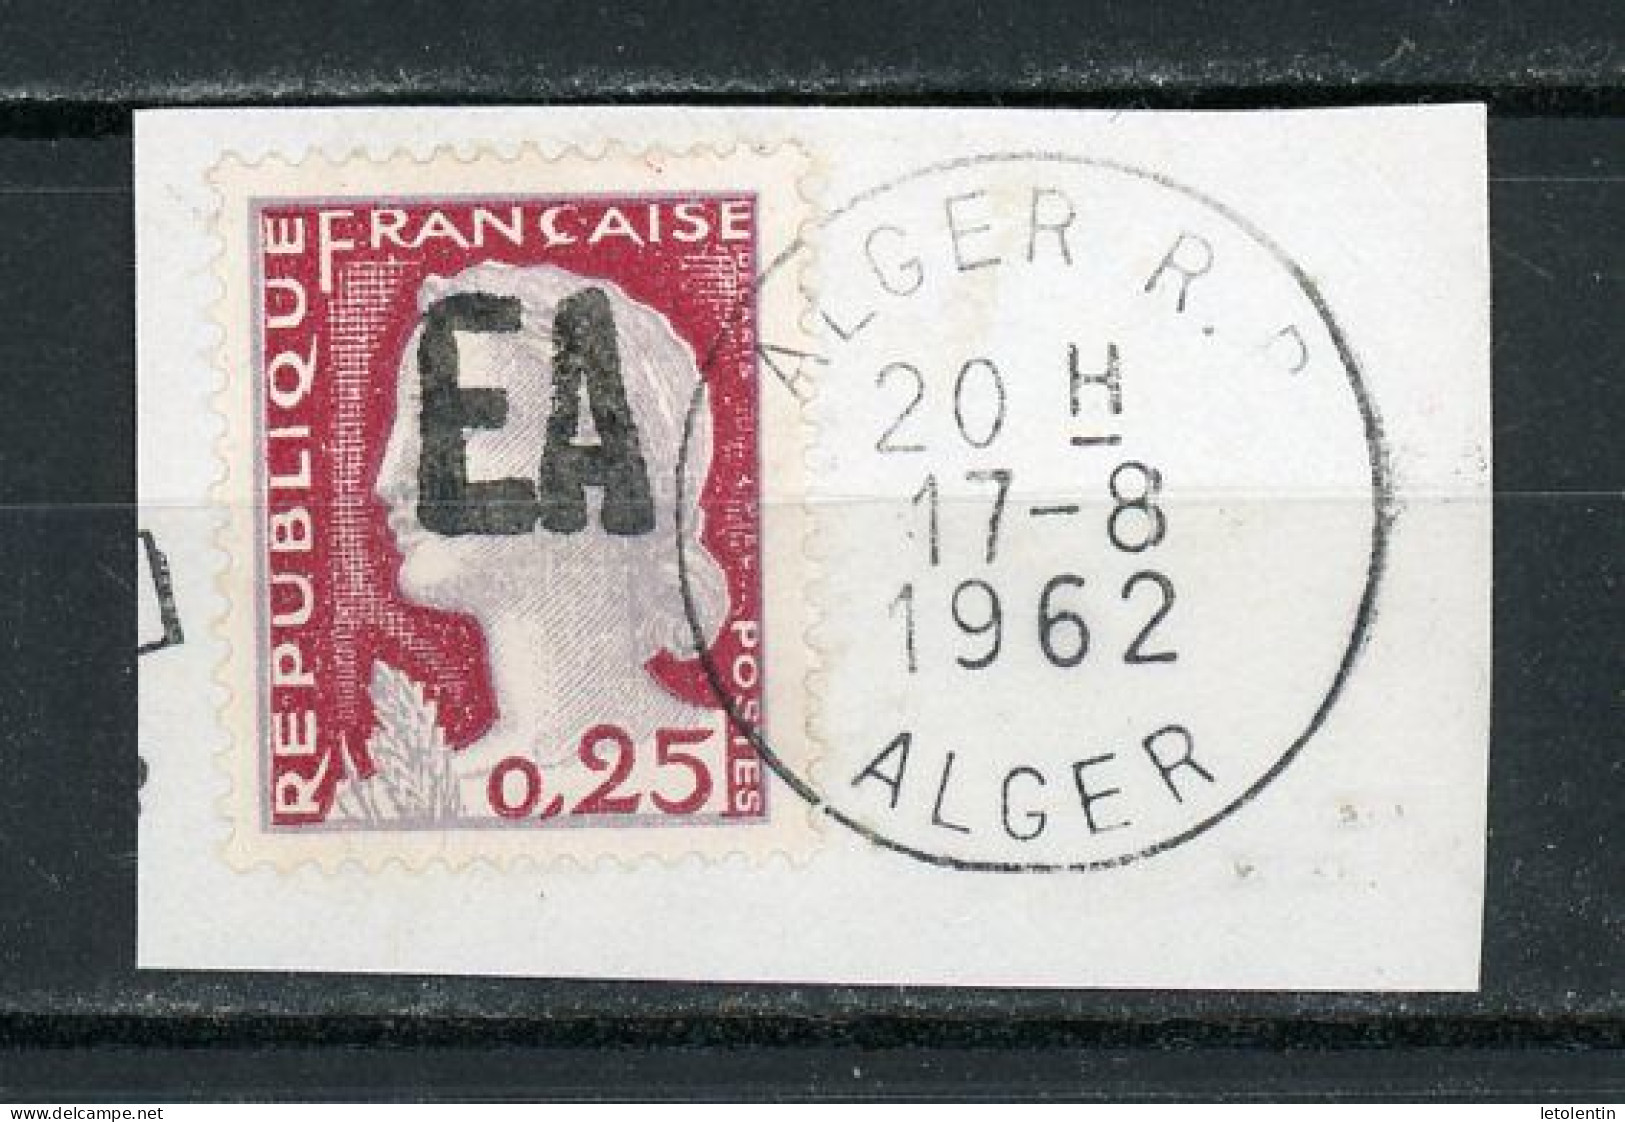 ALGÉRIE : M. DE DECARIS - (SURCH. EA) N° Yvert 355 Obli. "RÉPUBLIQUE FRANÇAISE" NON RAYÉ (SUR FRAGMENT) - Algérie (1962-...)